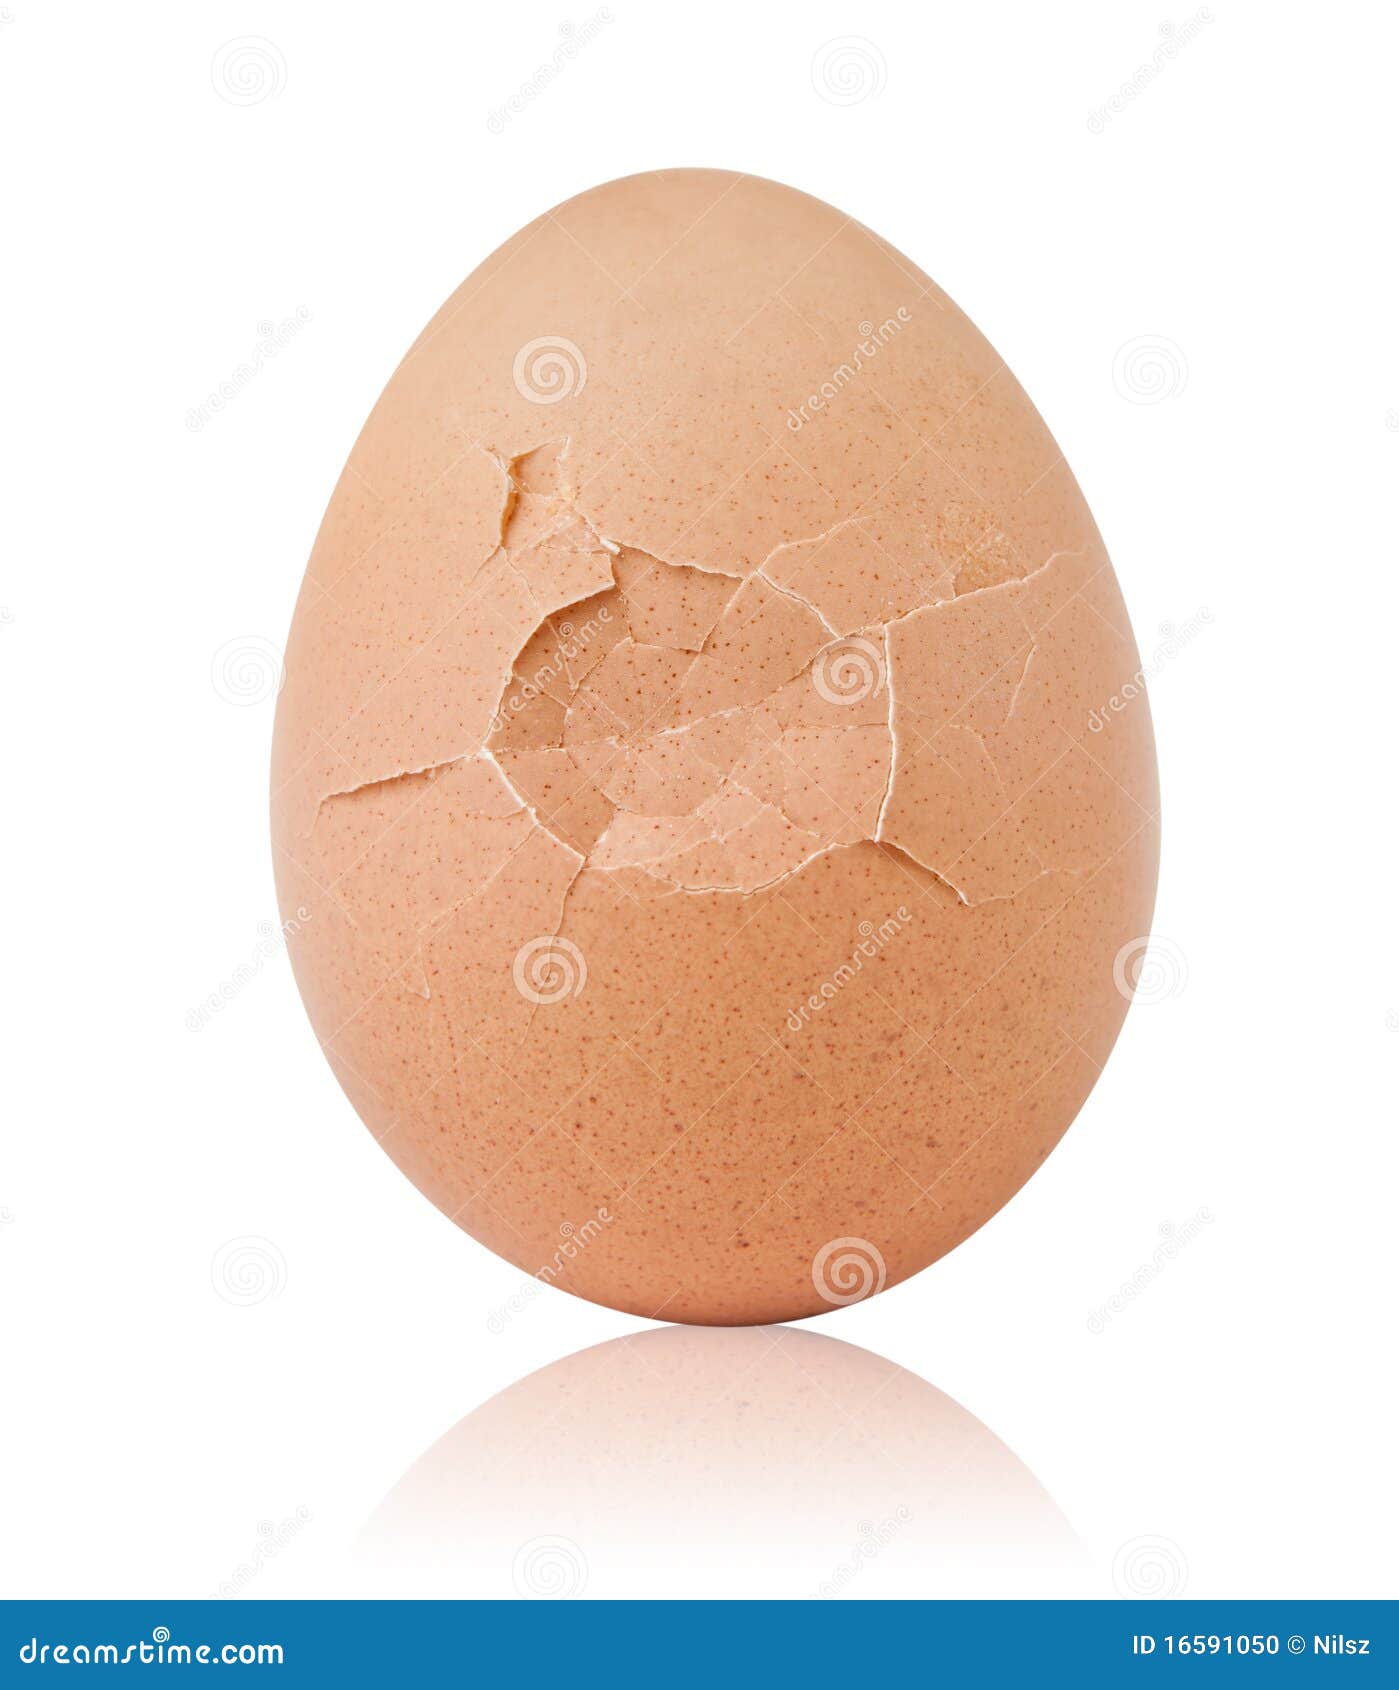 cracked breakfast egg